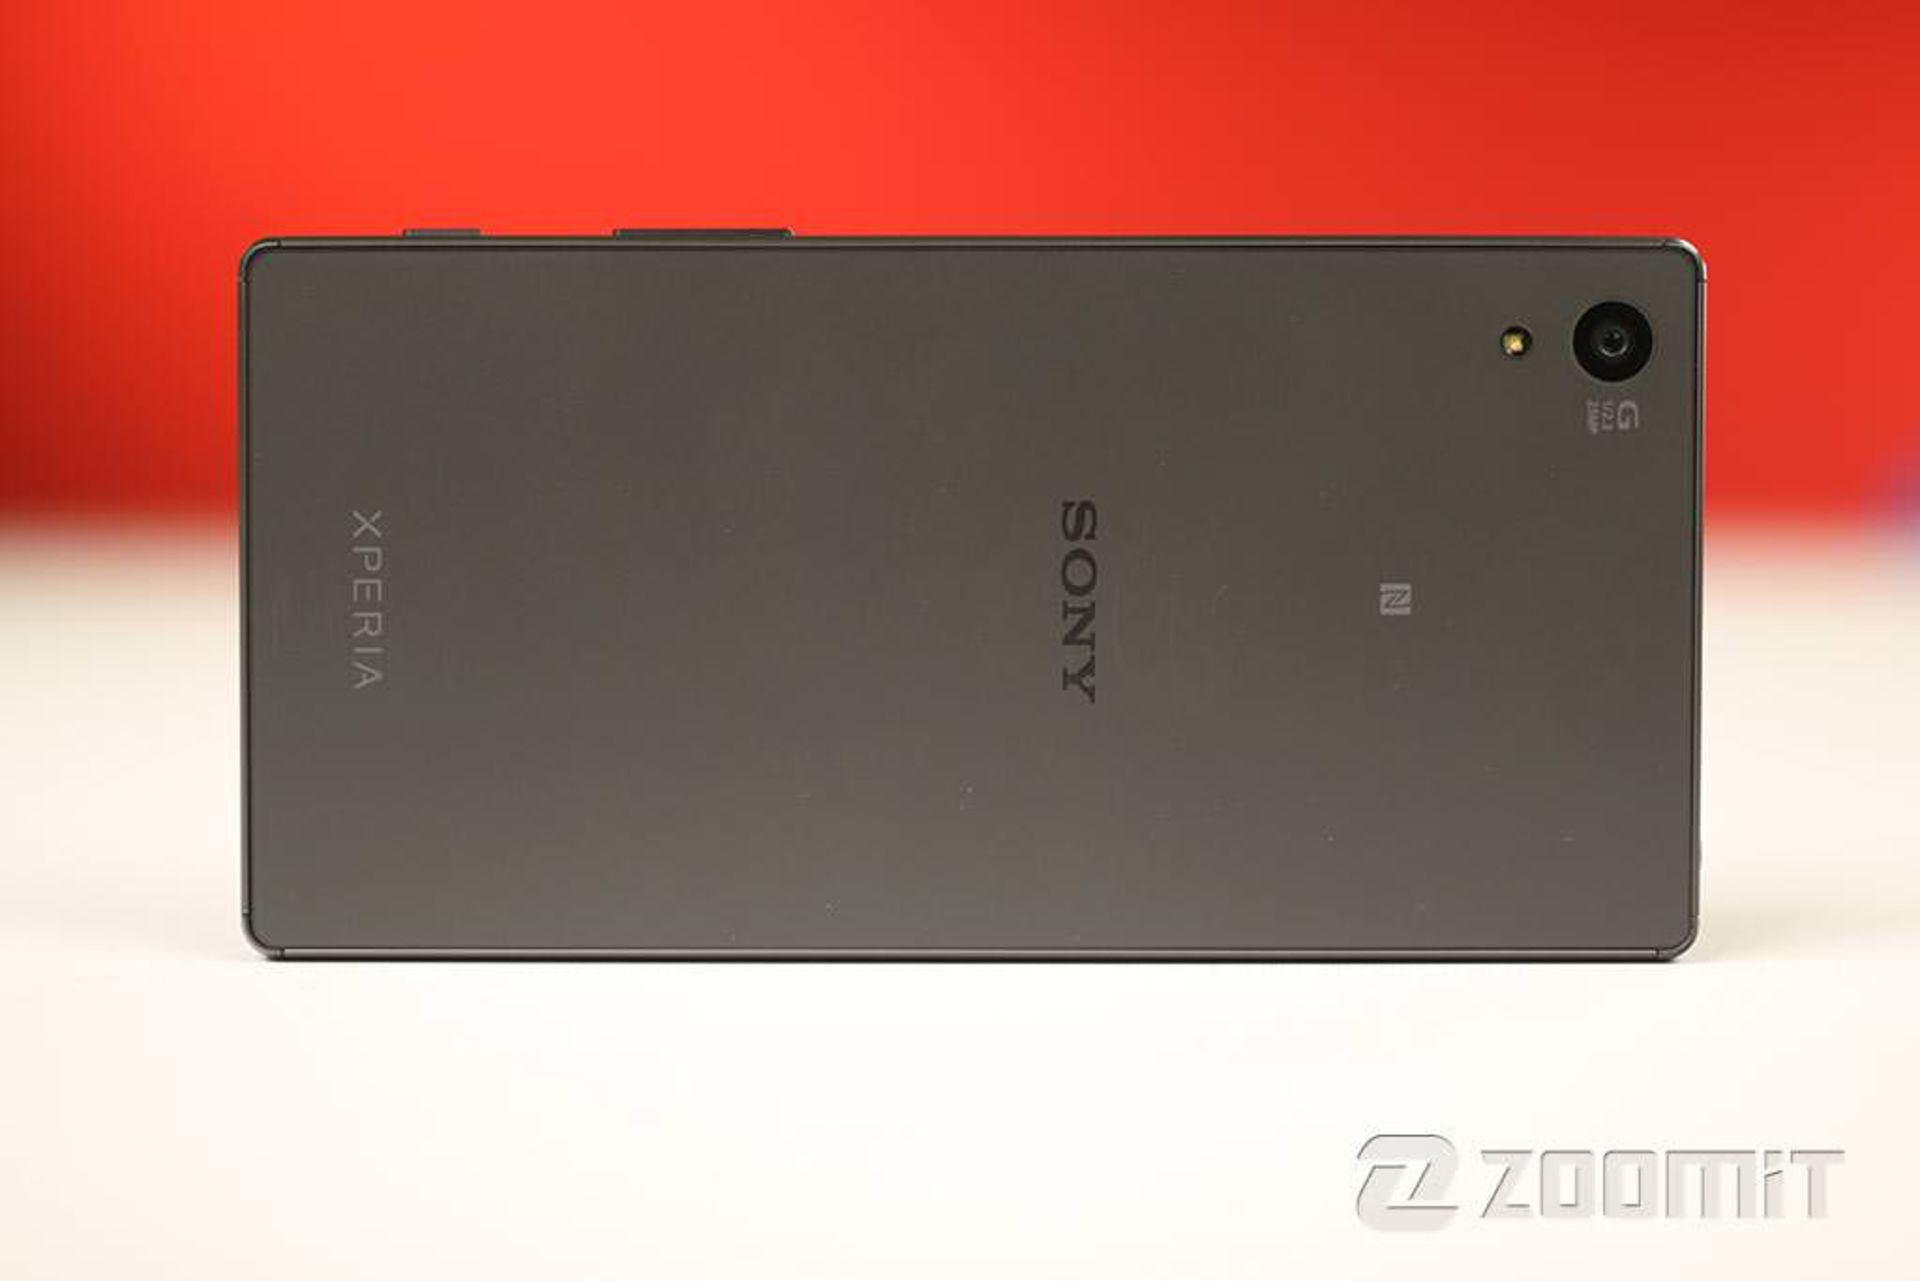 بررسی اکسپریا زد 5 سونی (Sony Xperia Z5)